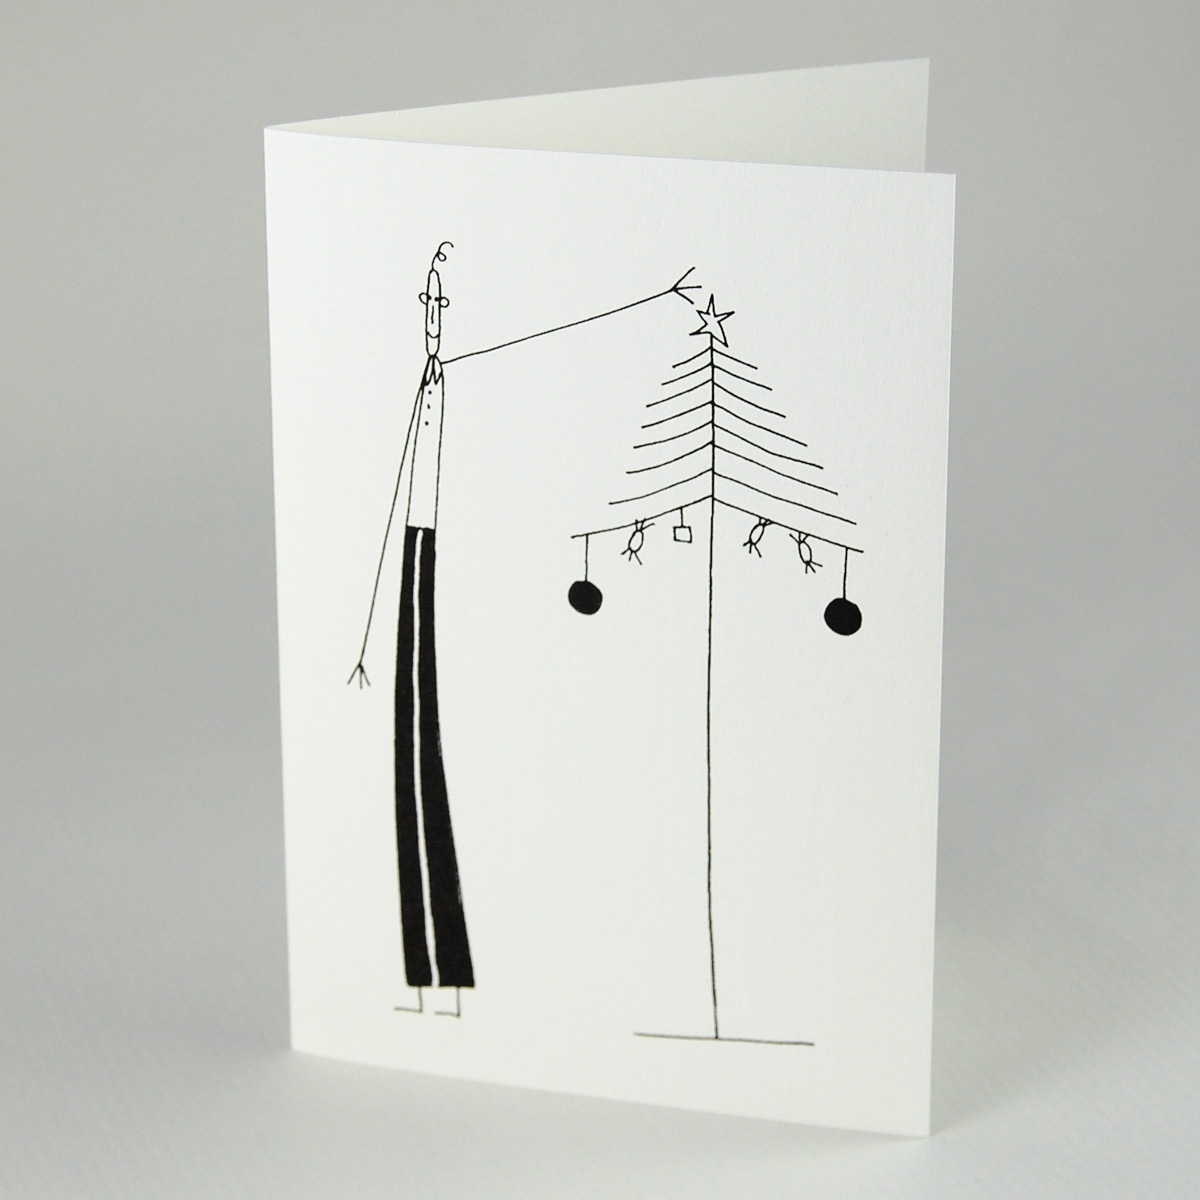 Dünner Mann beim Schmücken eines dünnen Weihnachtsbaums, monochrome, schlichte Weihnachtskarten